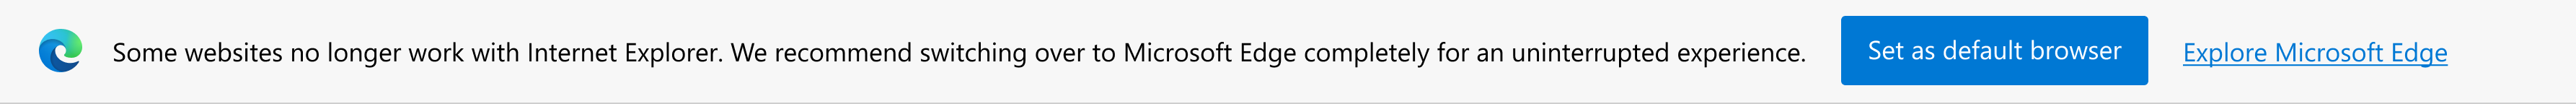 Notificación sobre sitios modernos y preguntar si se establece Microsoft Edge como explorador predeterminado o explorar Microsoft Edge.